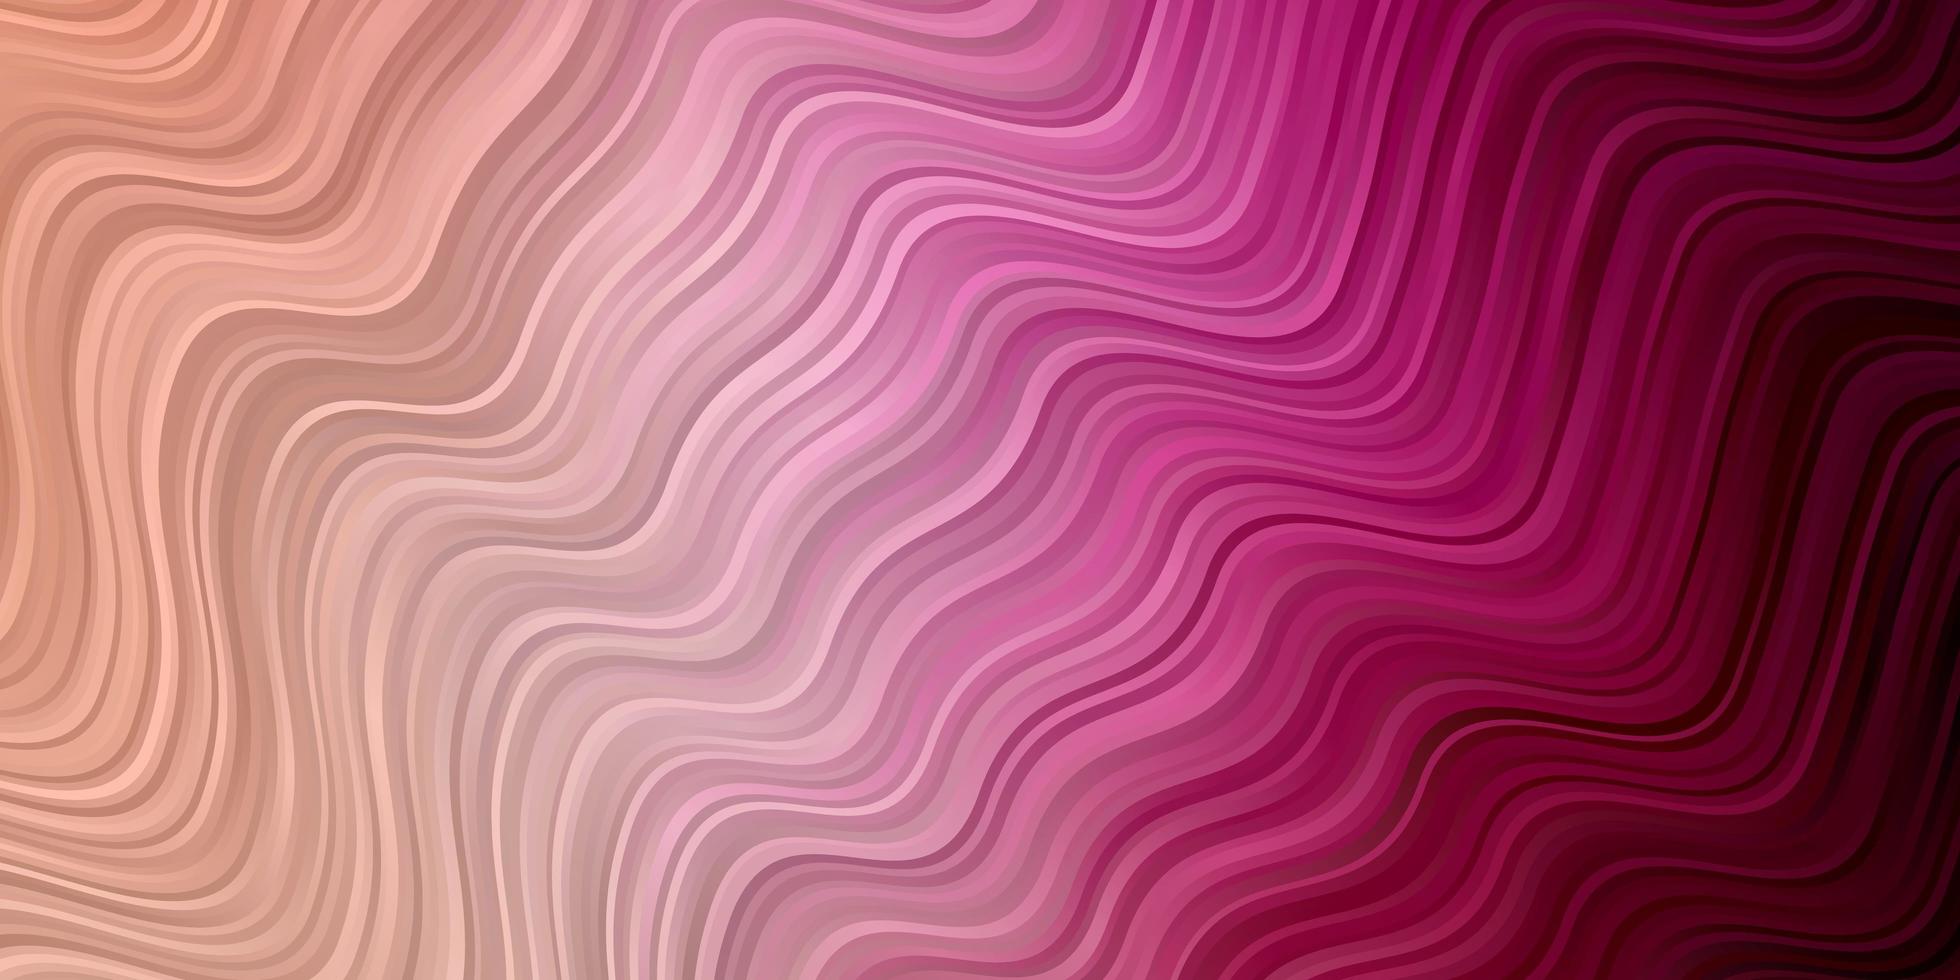 textura de vector rosa claro con arco circular. colorida ilustración en estilo circular con líneas. patrón para sitios web, páginas de destino.